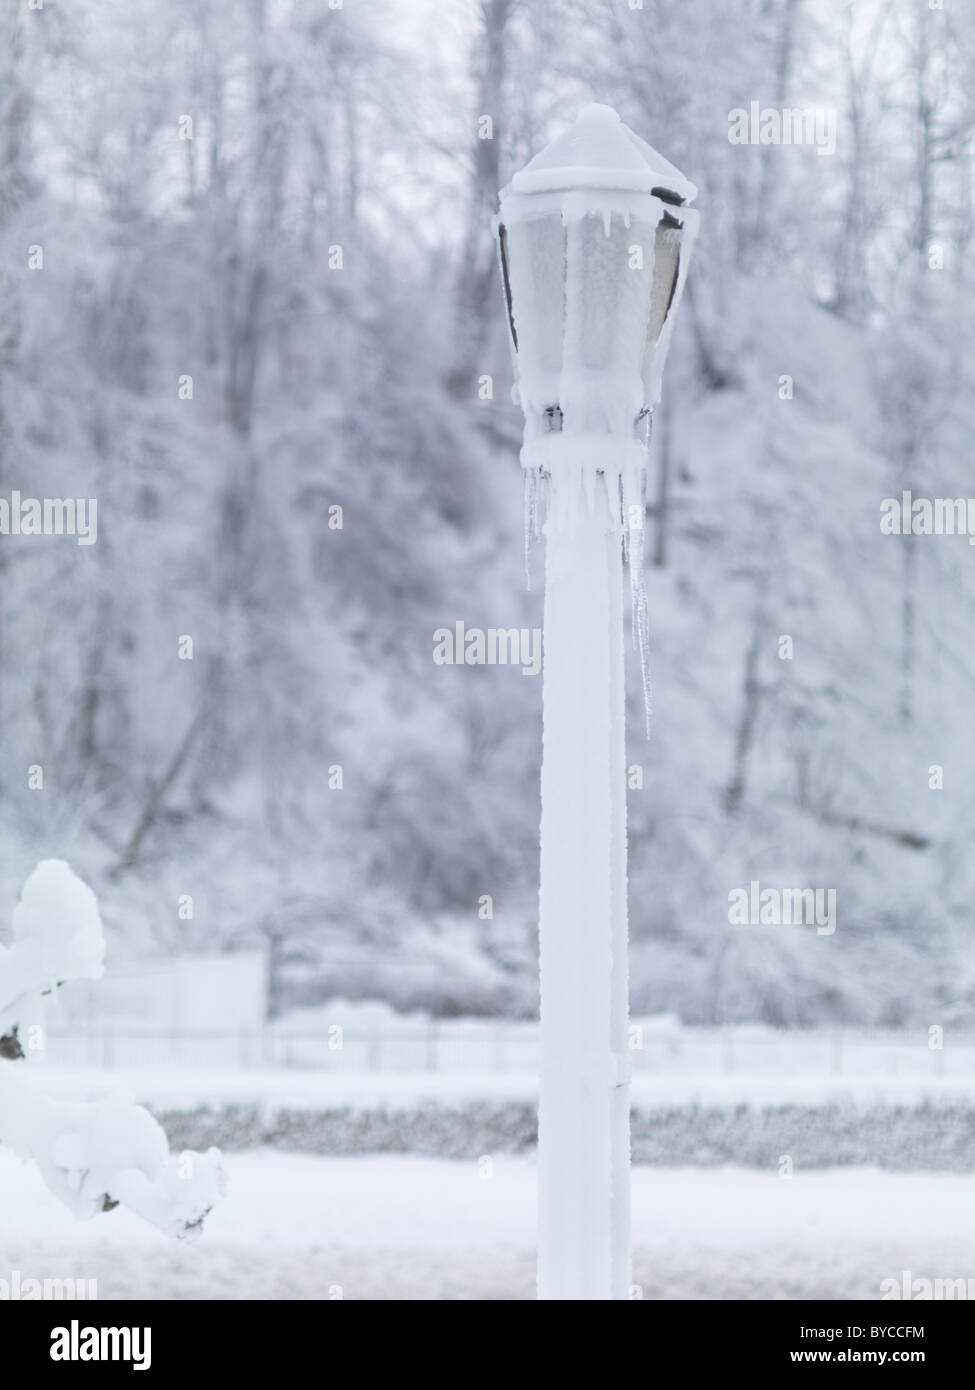 Frozen lamp post in a snow covered city. Niagara Falls, Ontario, Canada. Stock Photo